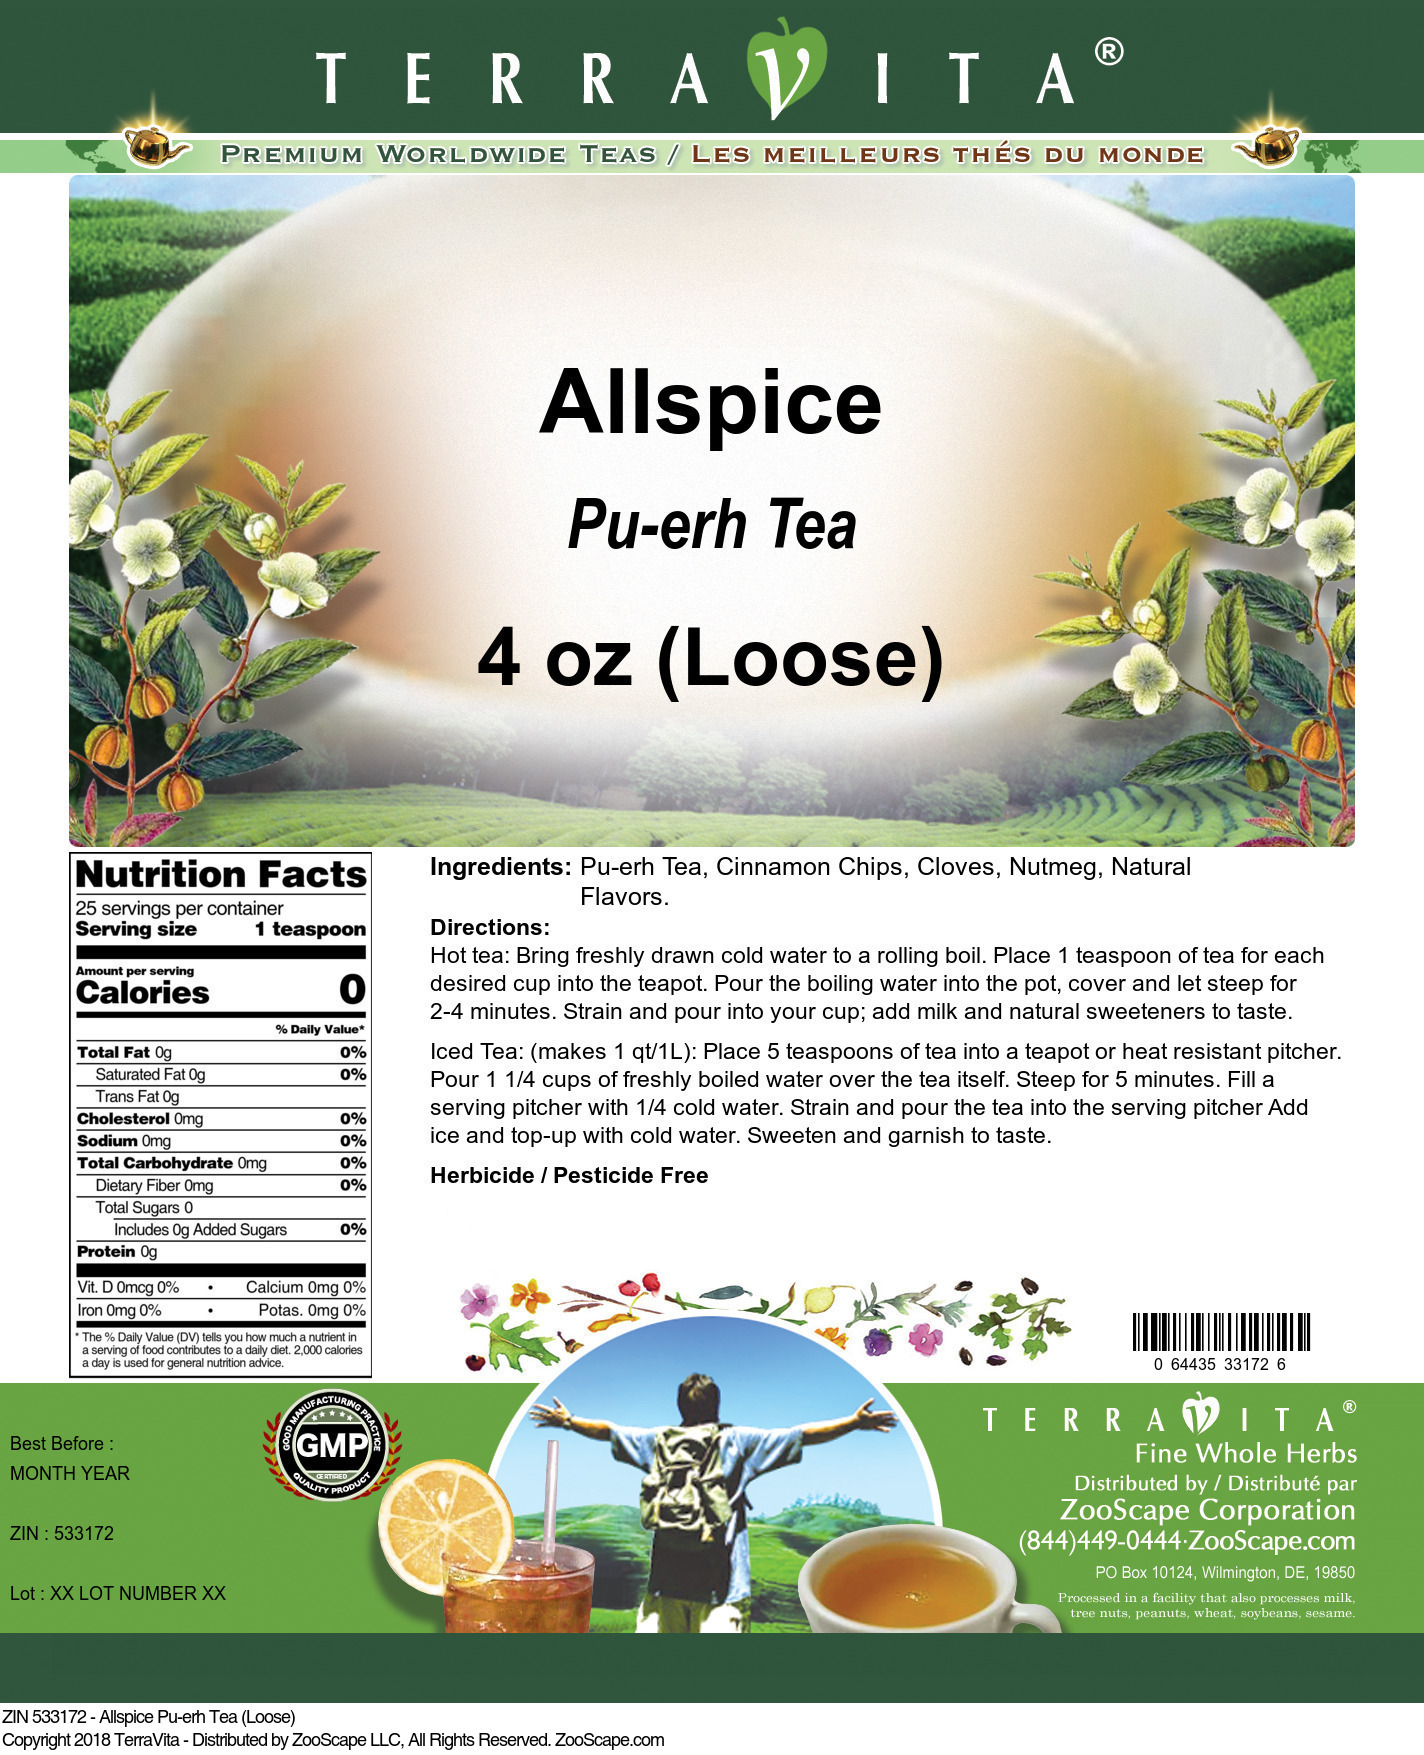 Allspice Pu-erh Tea (Loose) - Label